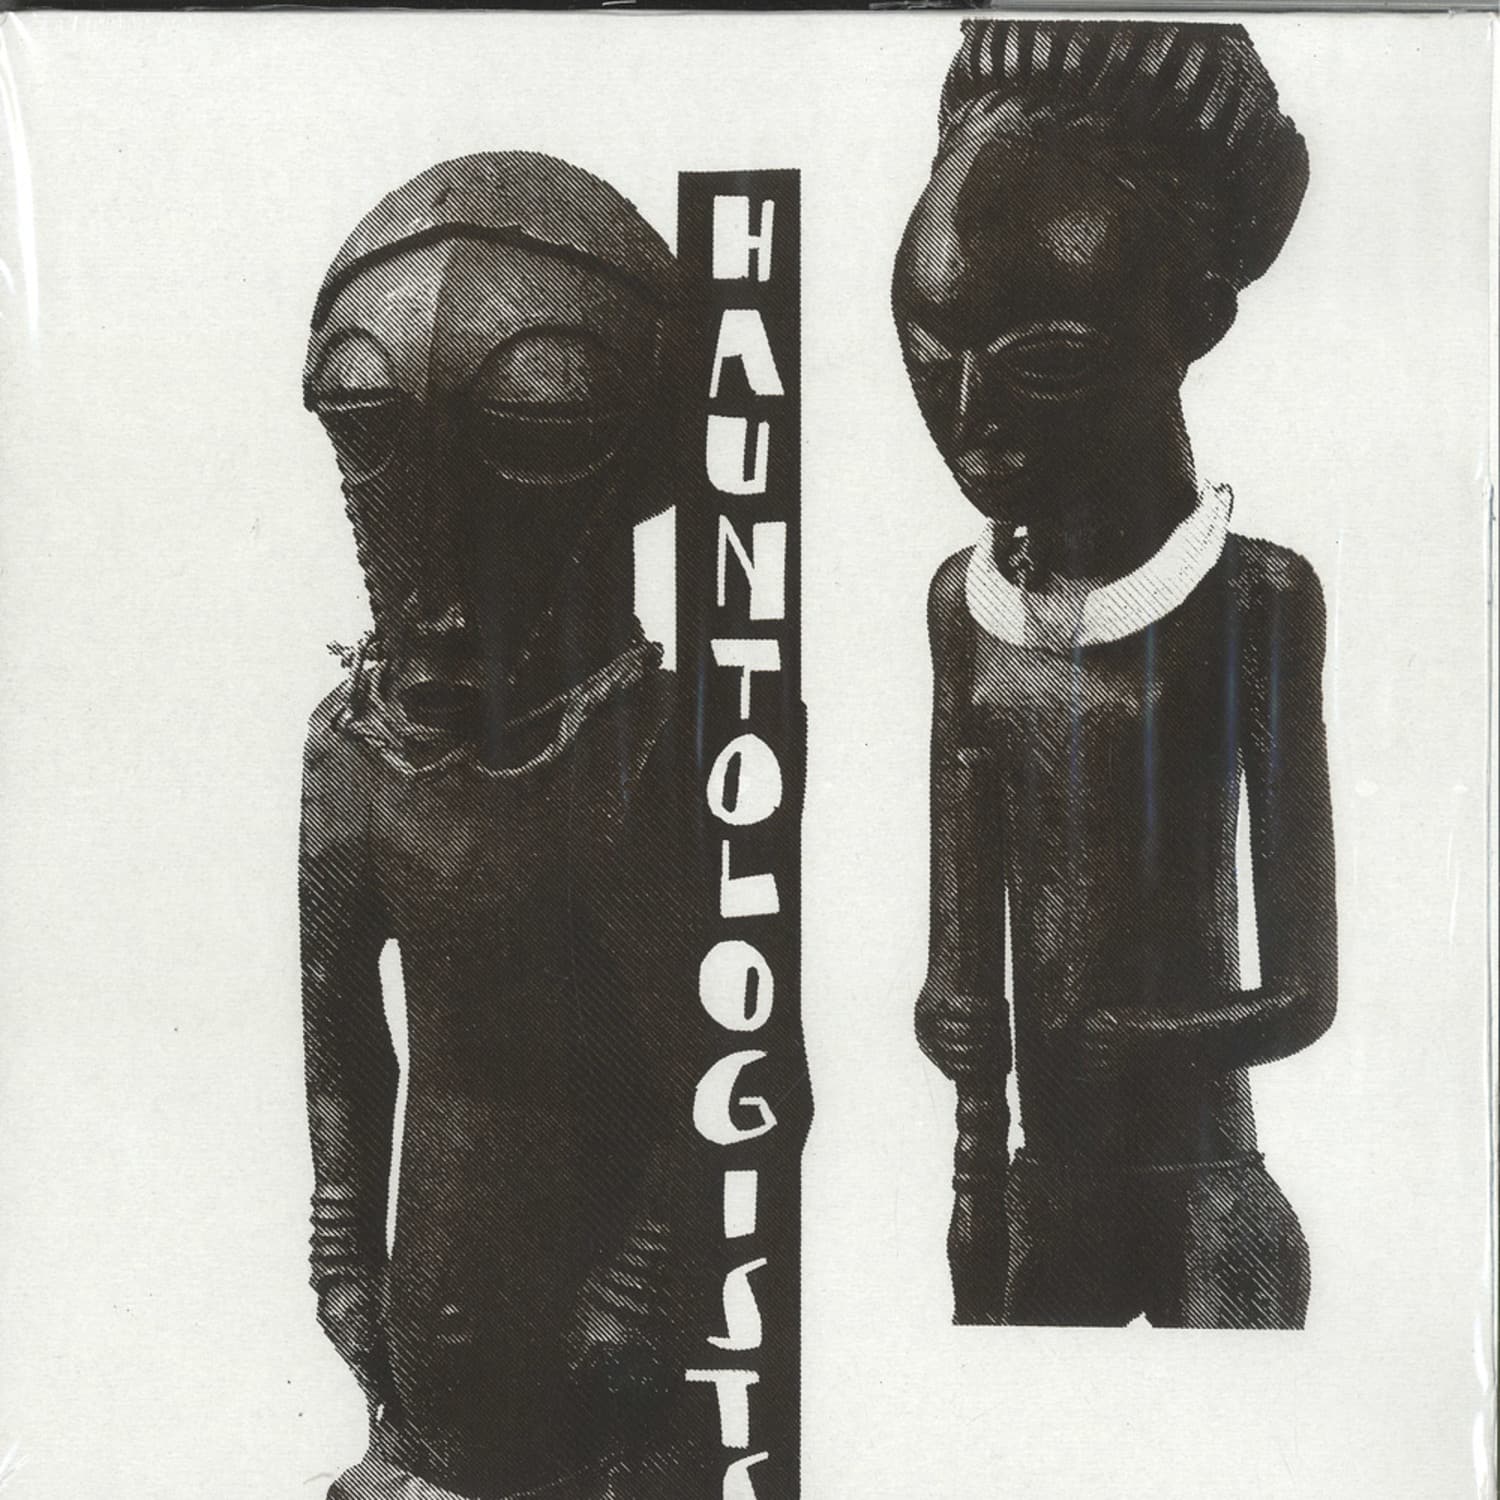 Hauntologists - EP 1